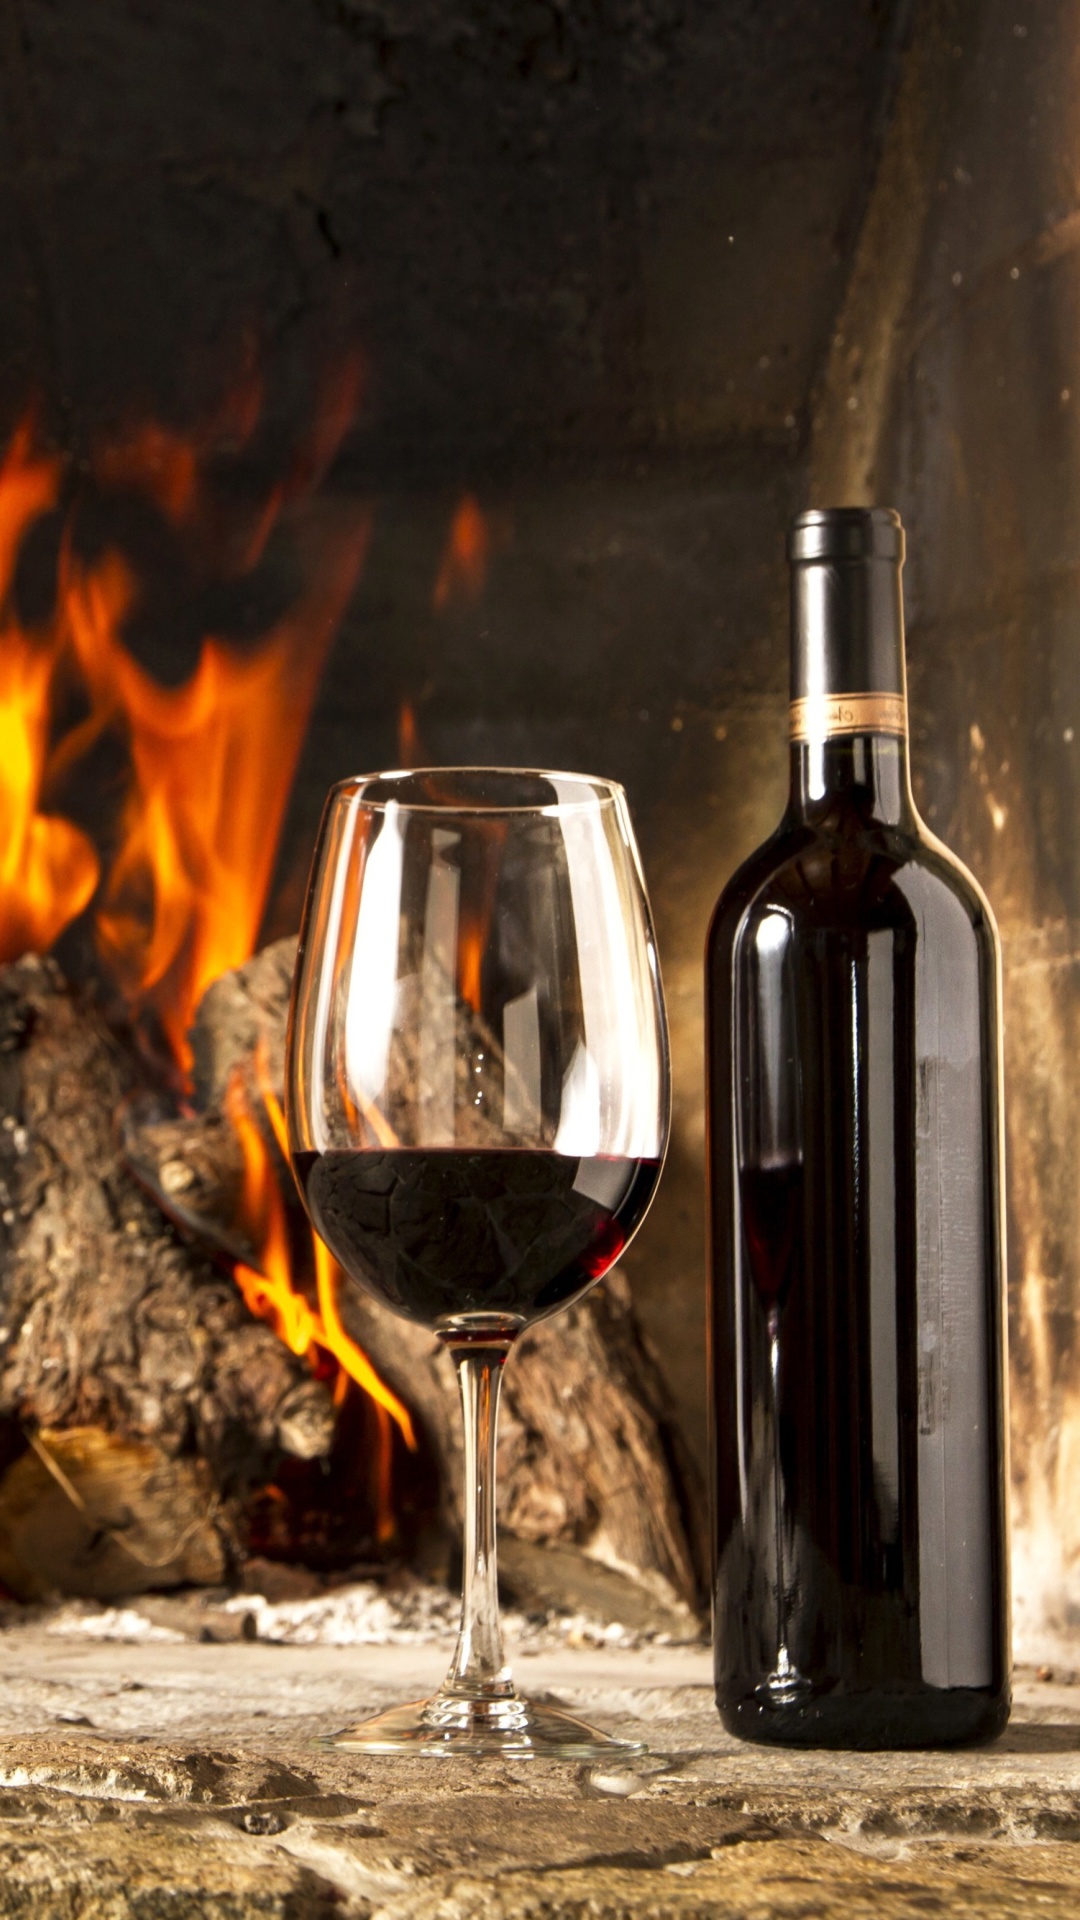 Обои Wine and fireplace 1080x1920